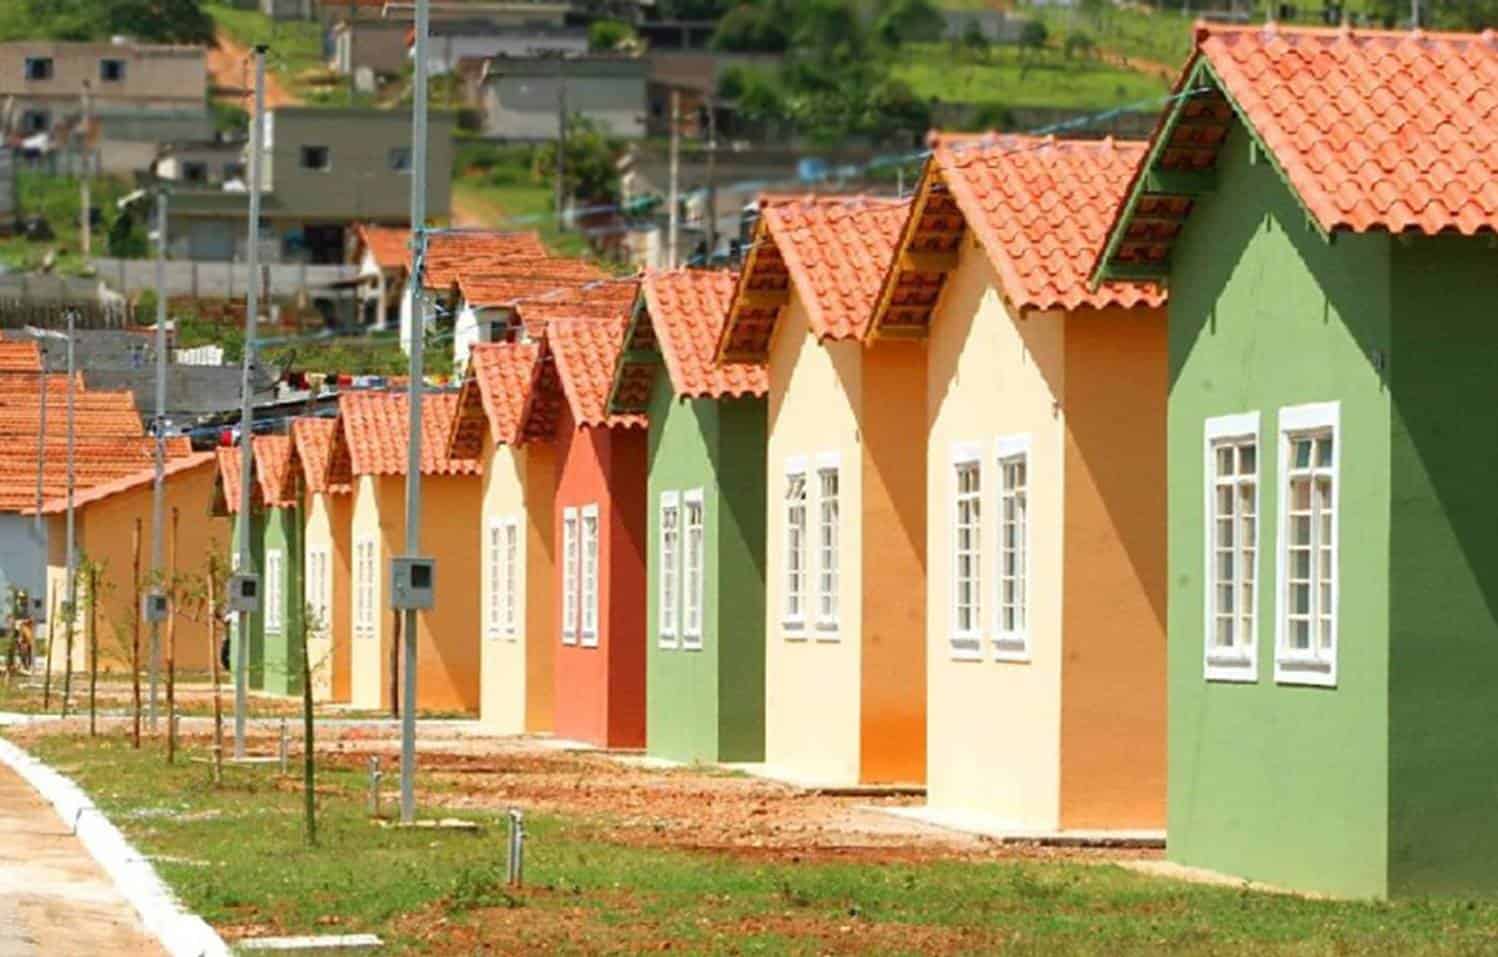 O presidente Jair Bolsonaro deve lançar em breve um novo programa habitacional, batizado de "Aproxima".